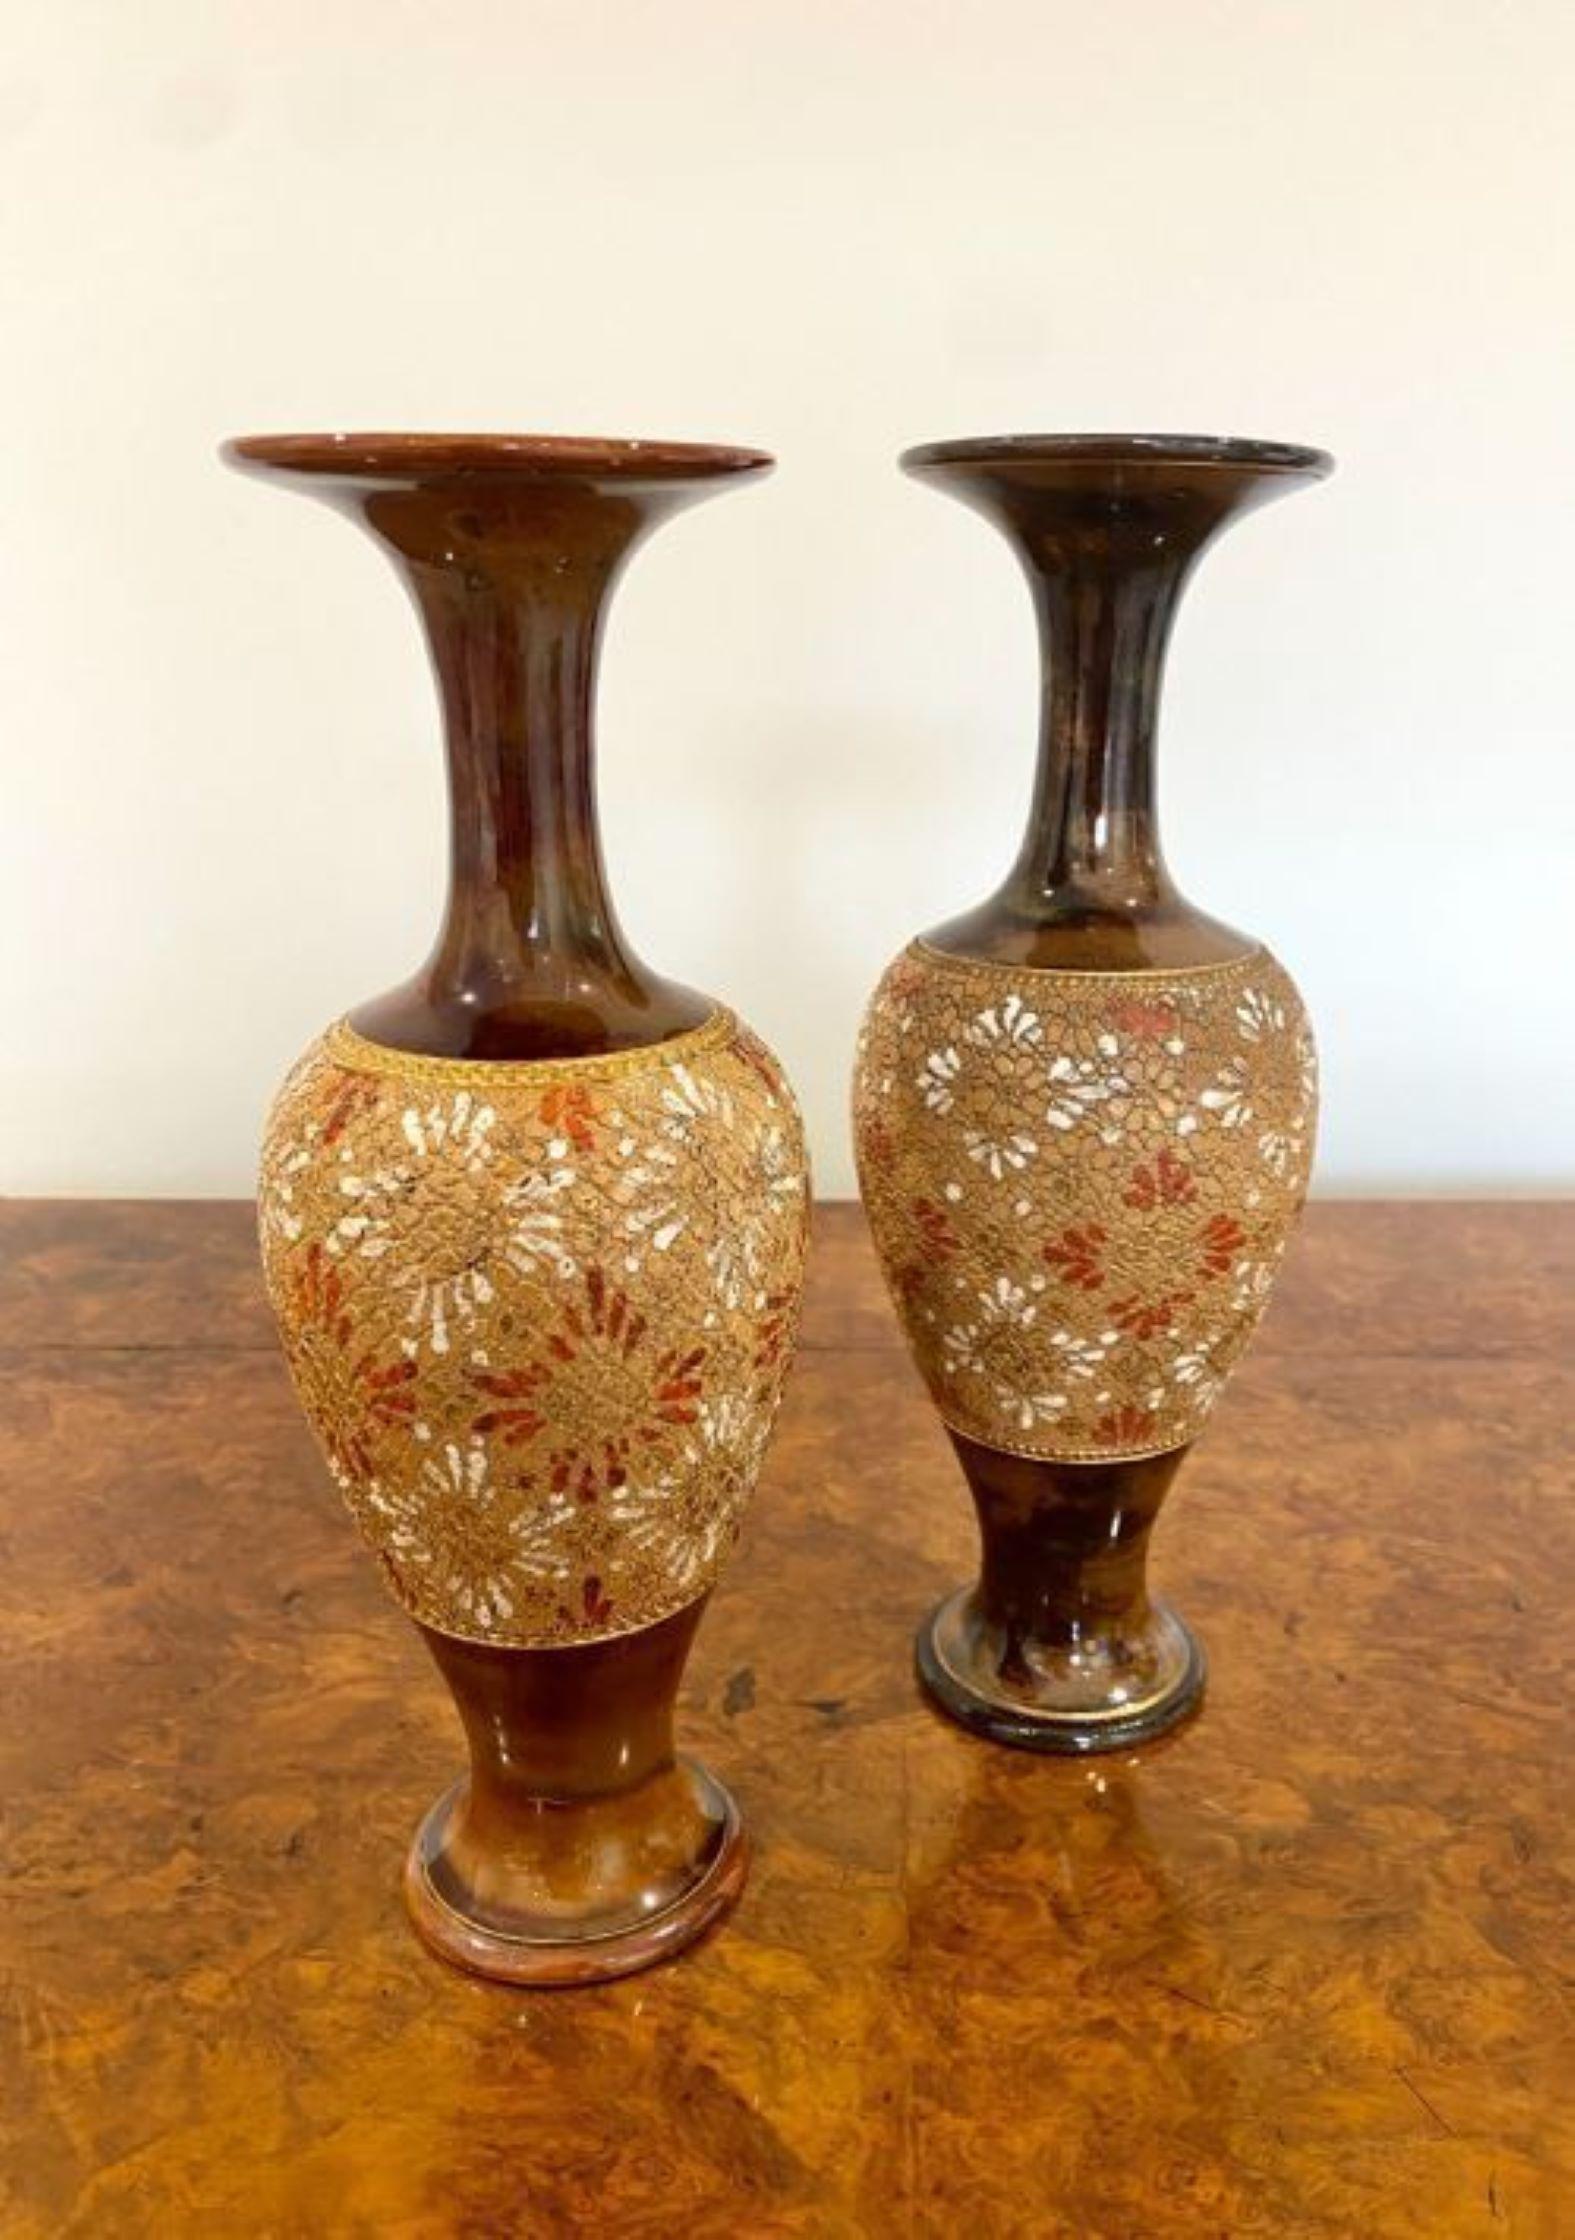 Ein Paar hochwertiger antiker viktorianischer Doulton-Vasen, ein Paar hochwertiger Doulton-Vasen in Form von wunderschönen braunen und karamellfarbenen Vasenhälsen, fabelhafte geprägte Blumen in der Mitte mit handgemalten Details in wunderschönen